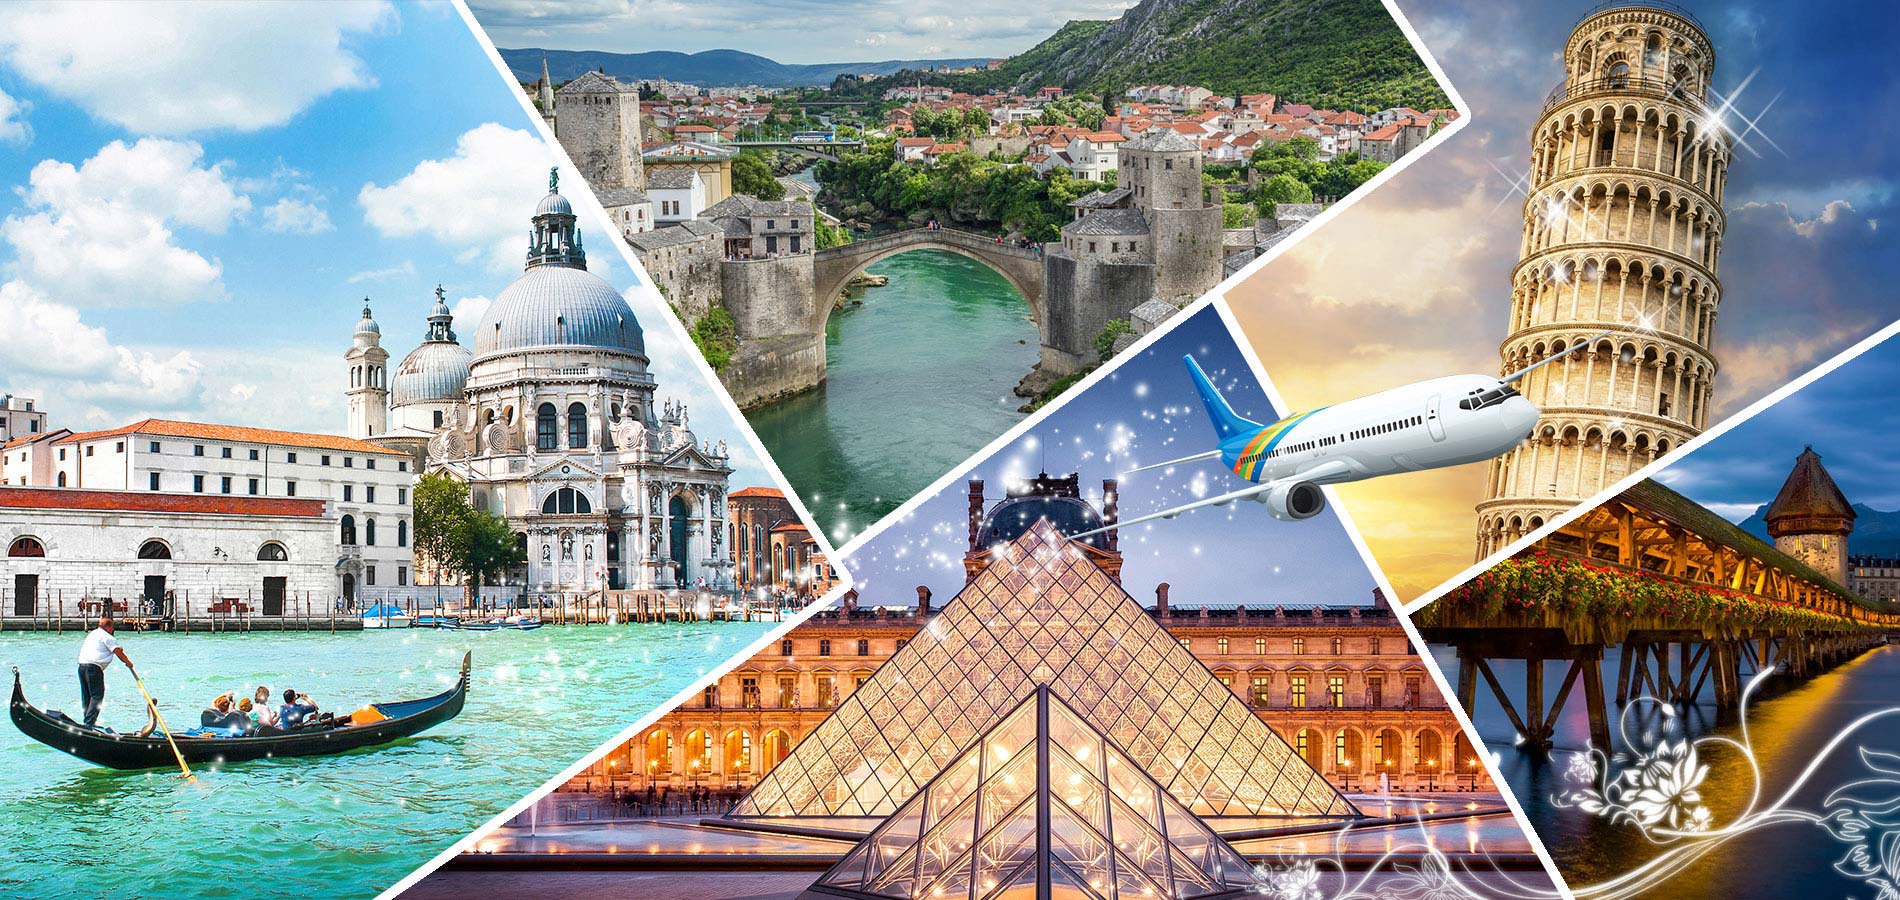 Visa châu Âu là cầu nối giữa bạn và châu Âu tuyệt đẹp với những địa điểm nổi tiếng như tháp Eiffel hay Venice đầy lãng mạn. Hãy cùng khám phá văn hóa, ẩm thực và nhiều hoạt động thú vị khác bên cạnh chi phí hợp lý và thủ tục đơn giản để có được visa châu Âu.